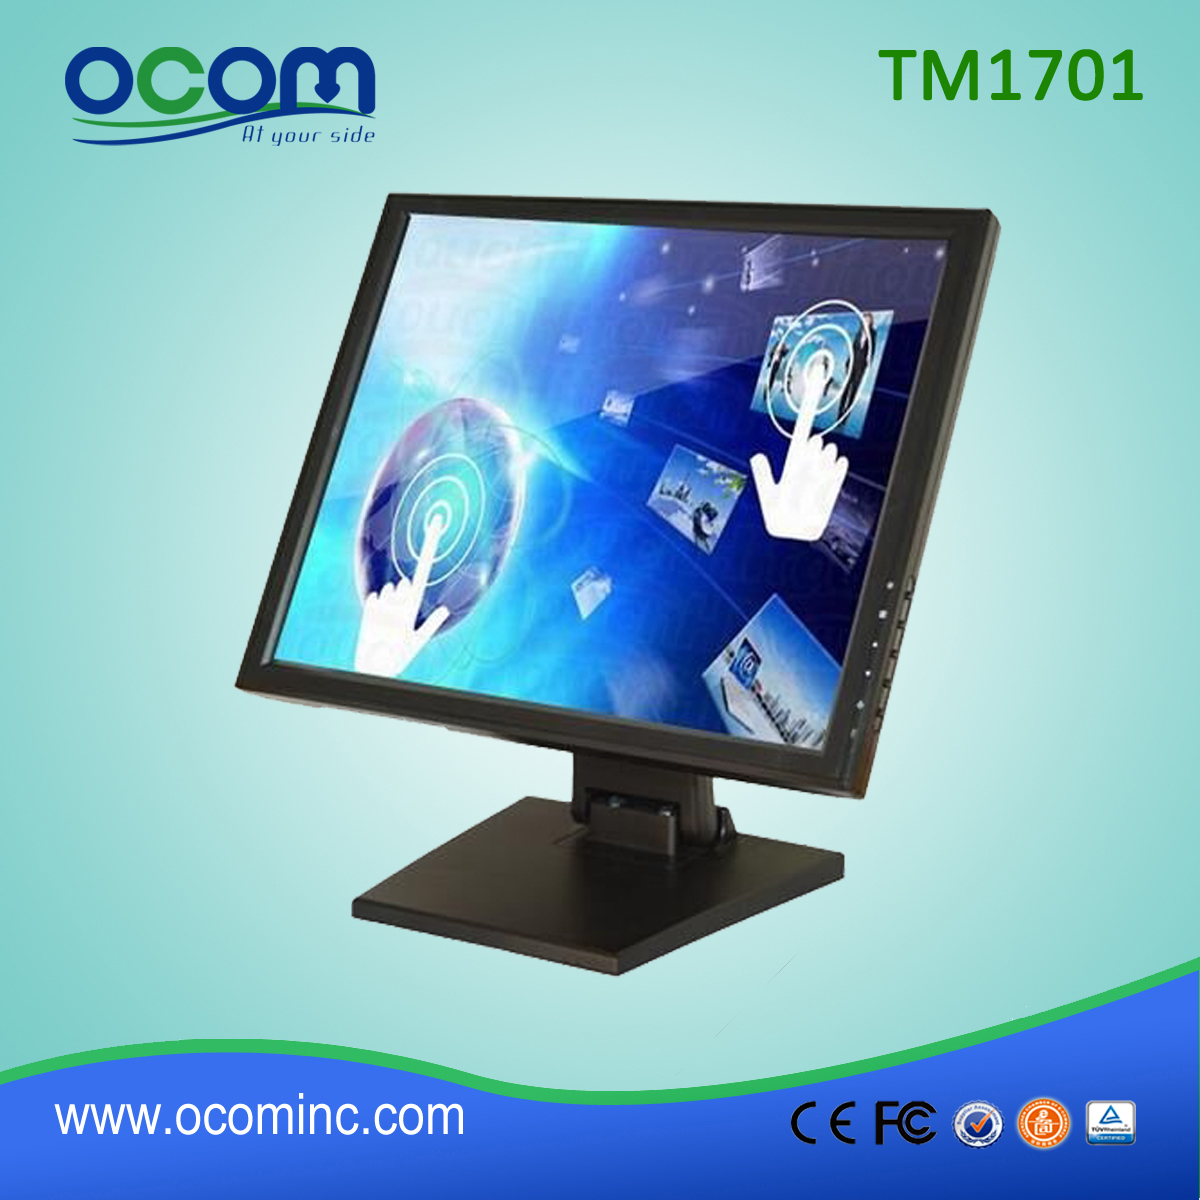 TM1701 LCD de 17 pulgadas monitor de pantalla táctil POS